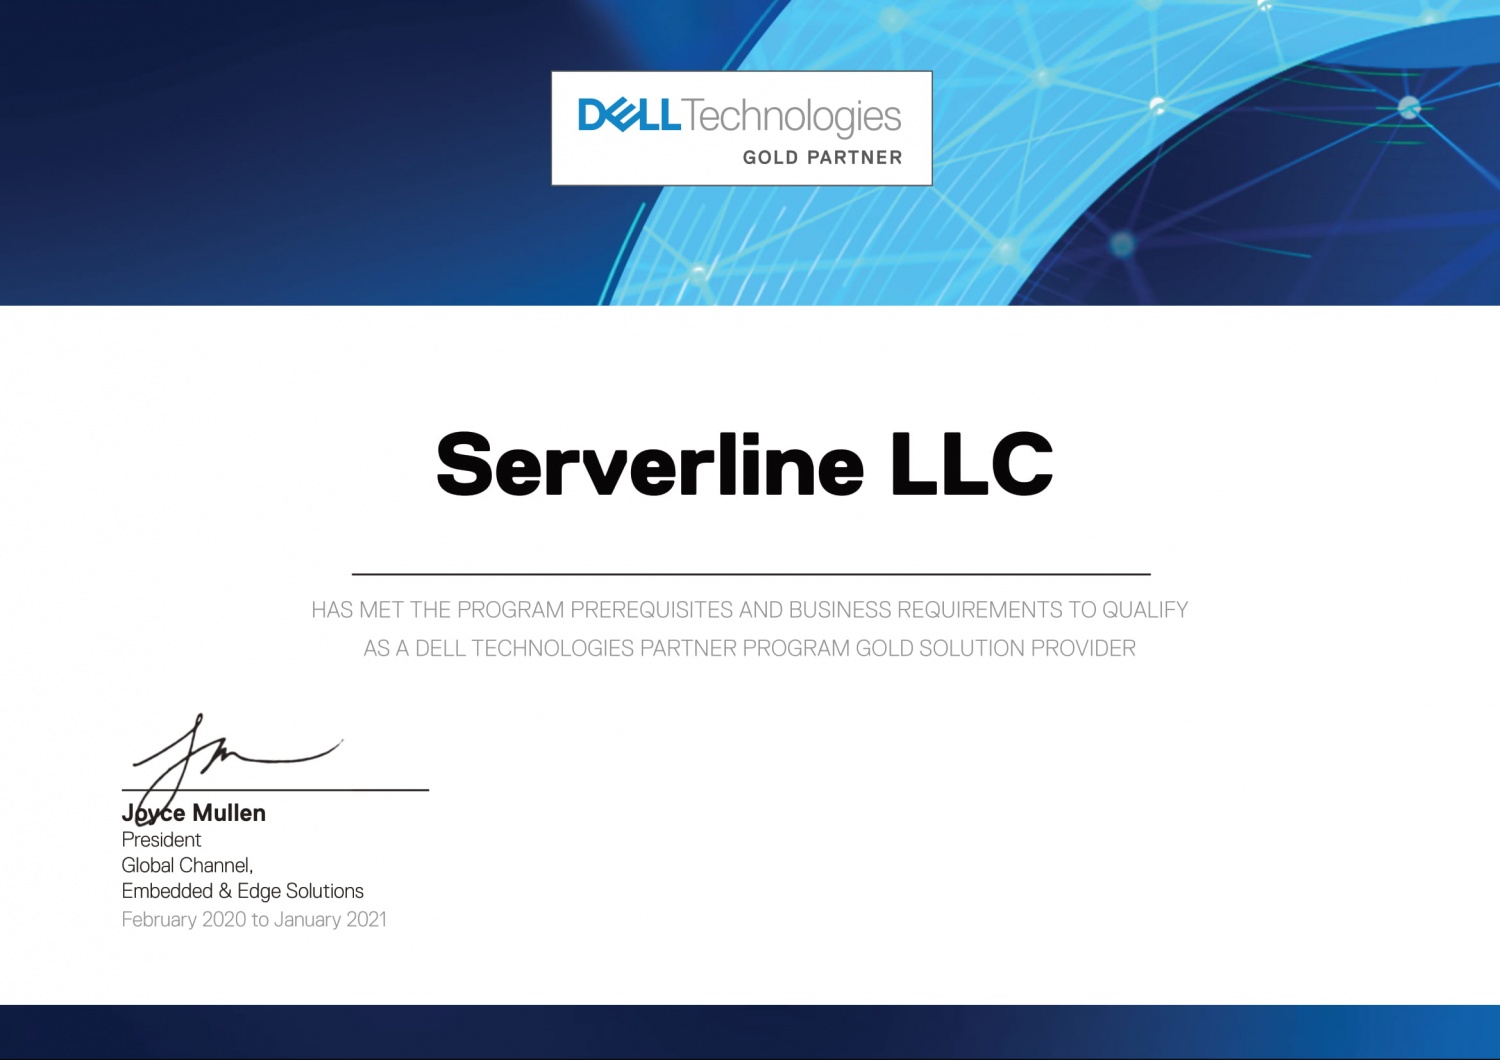 Dell_Technologies_Partner_Program_Certificate_2020_ID_3342153294-1.jpg